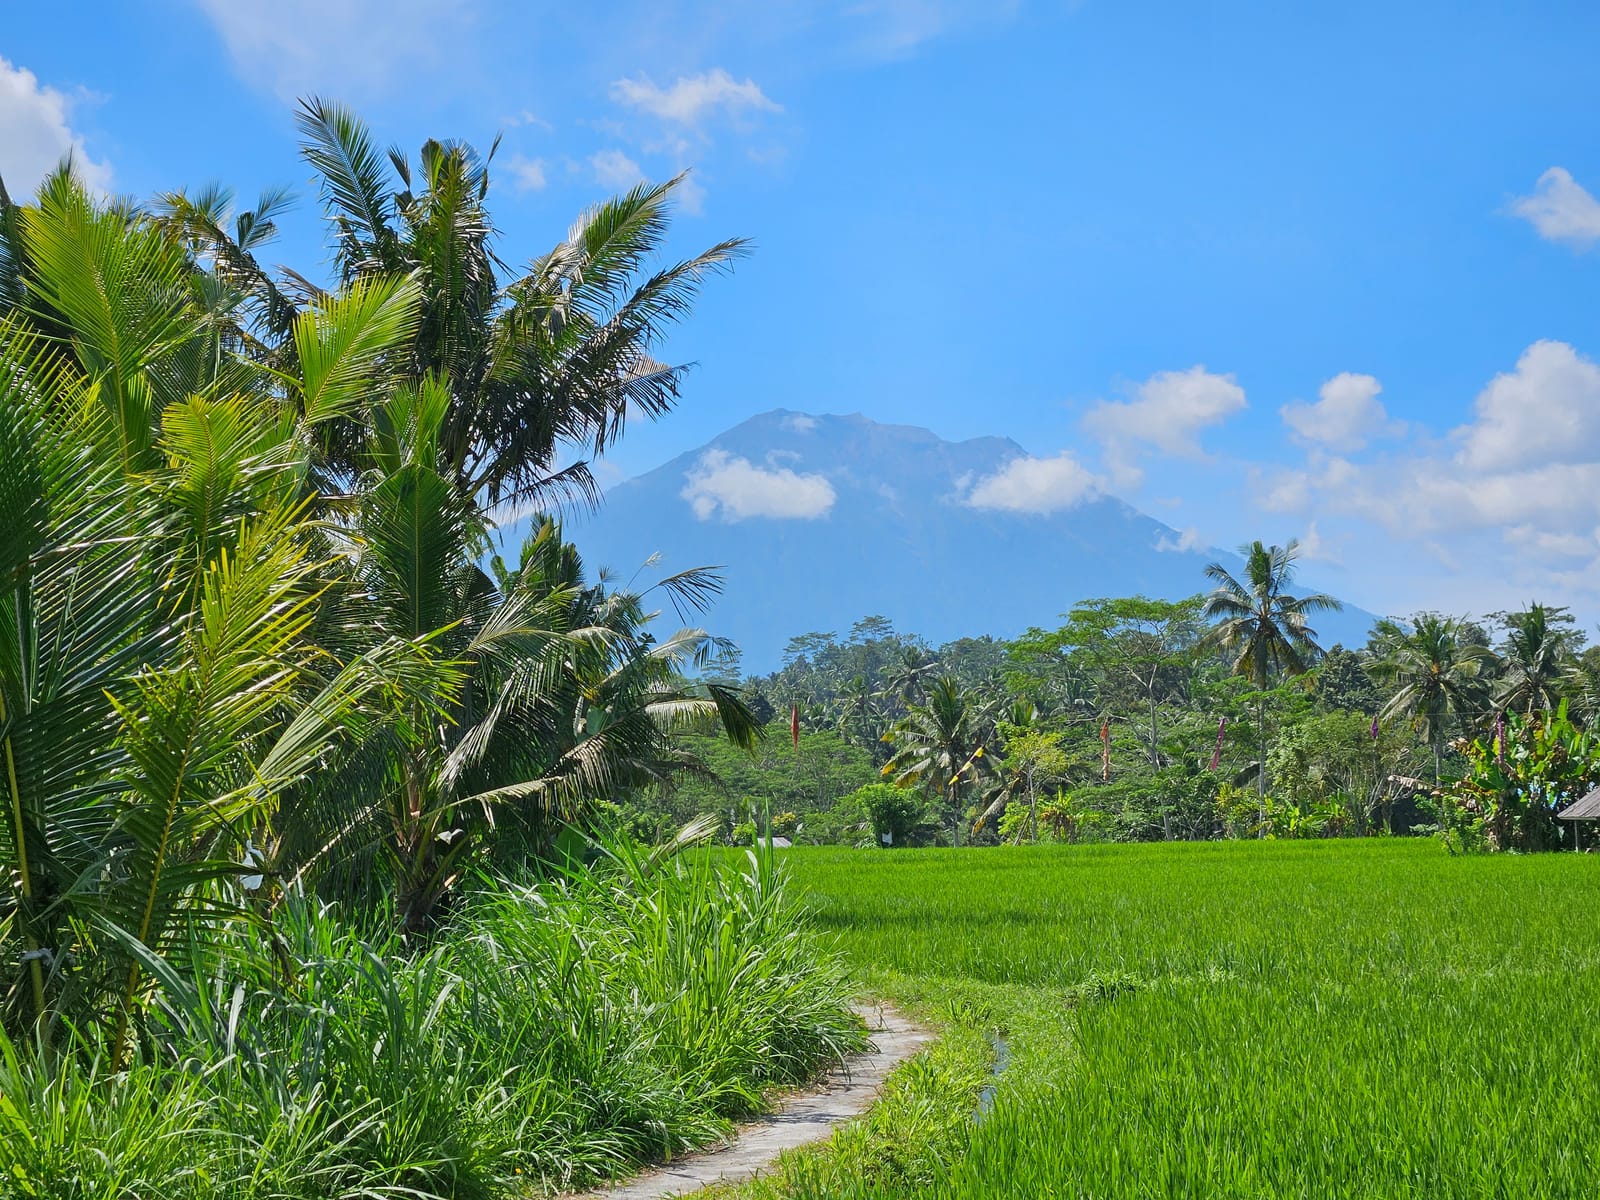 Sidemen - Locul cu adevărat autentic din Bali! Itinerar 5 zile